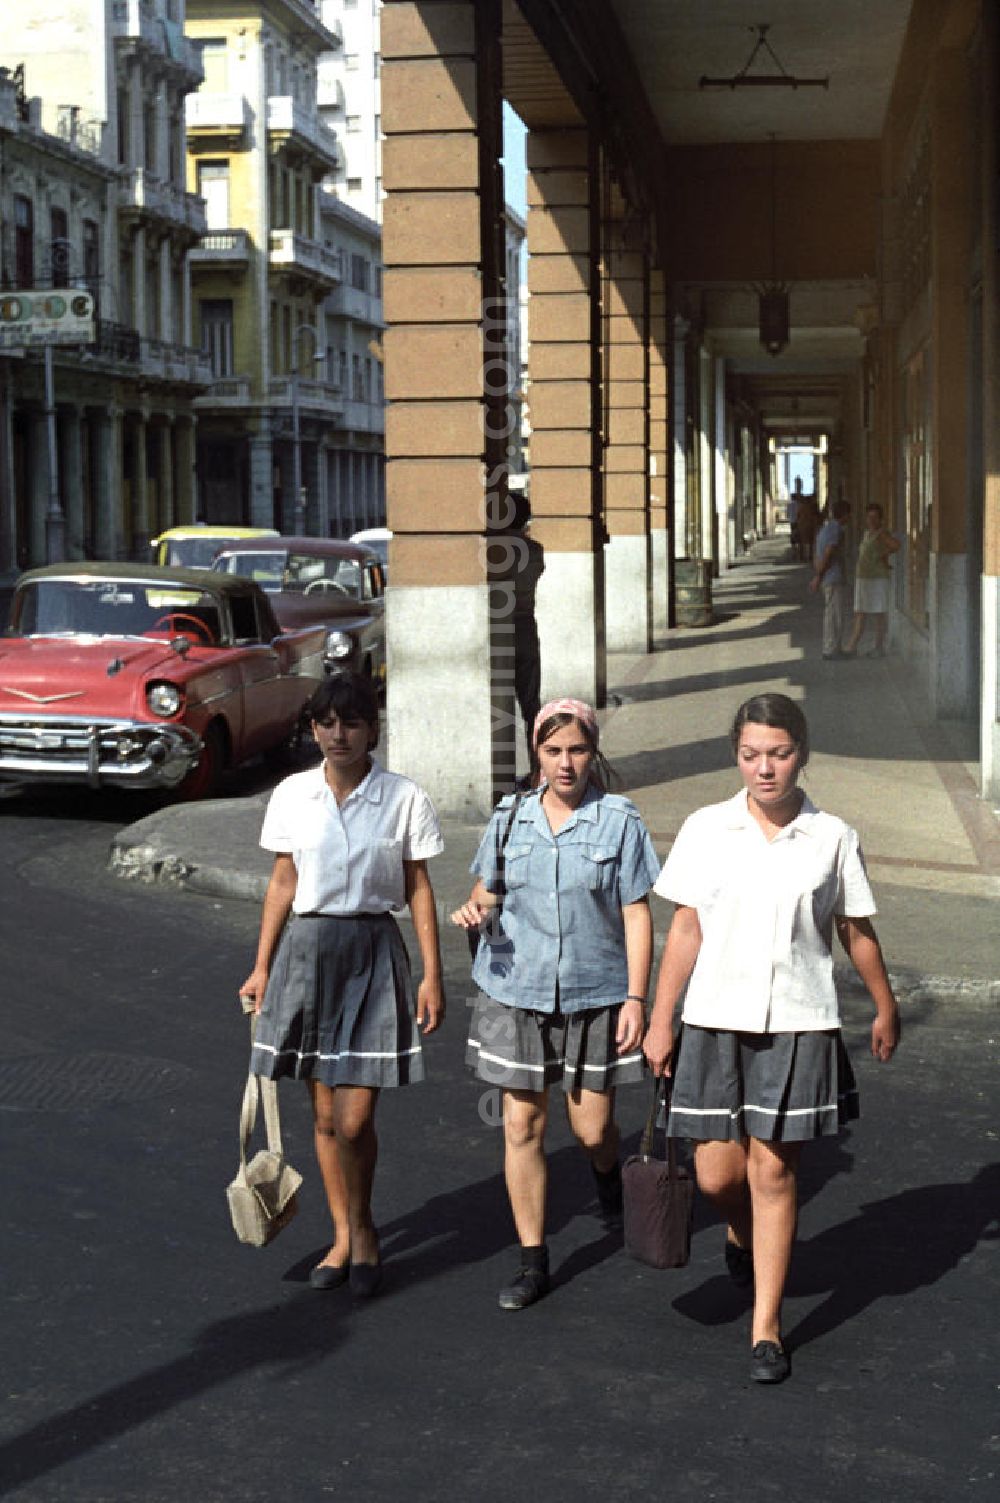 GDR image archive: Havanna - Drei Mädchen in Schuluniform überqueren eine Straße in Havanna.